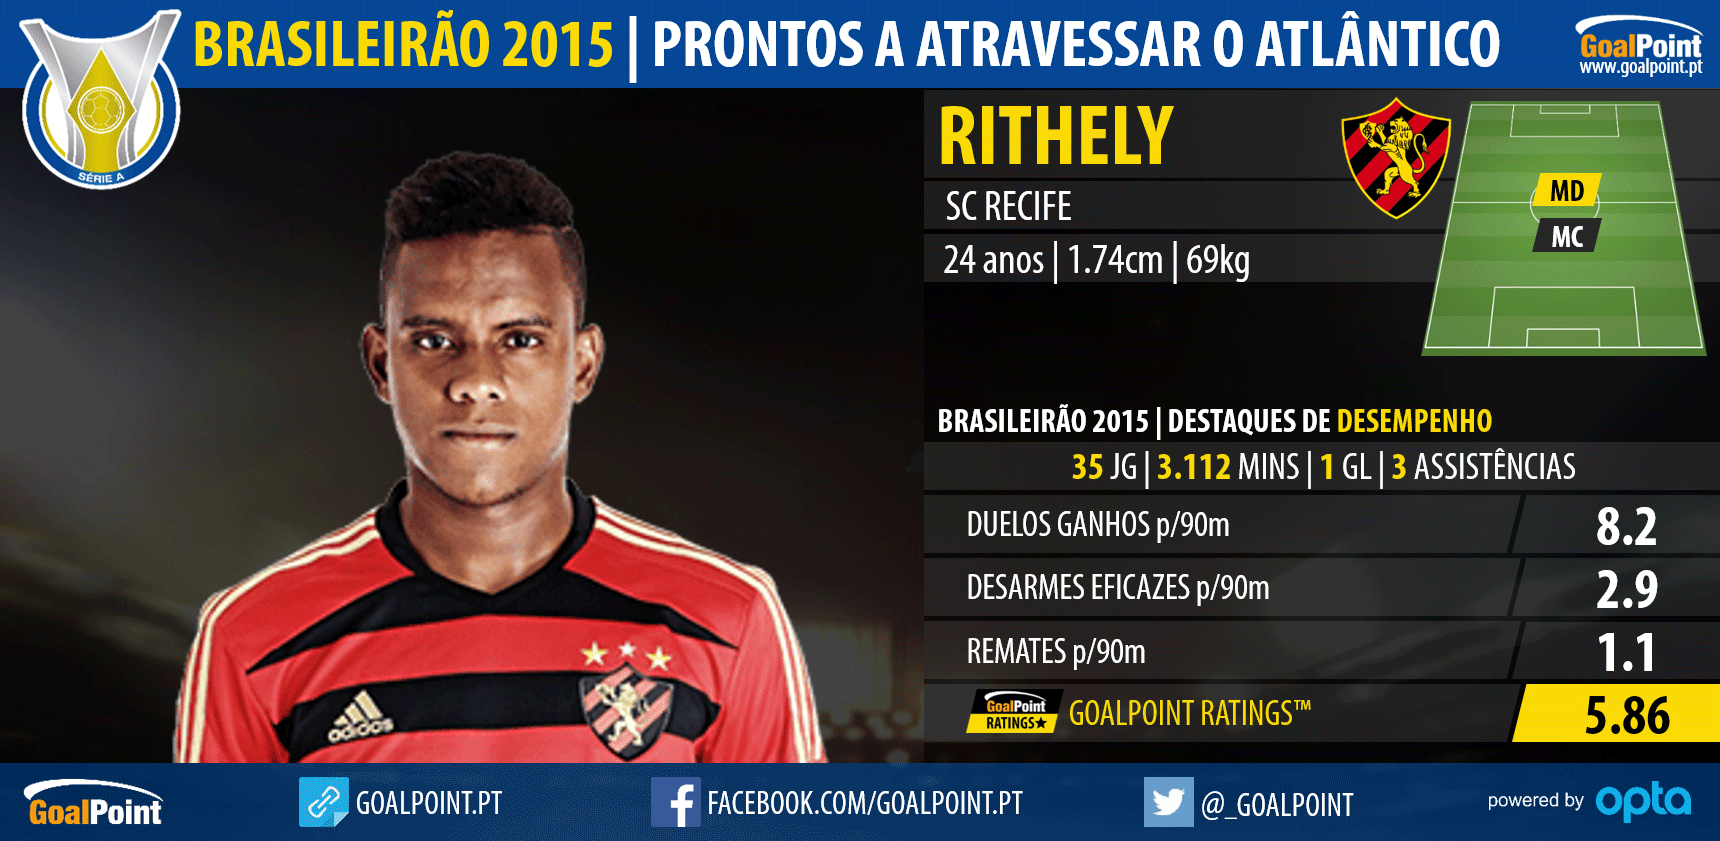 Brasileirão 2015: 10 nomes prontos a atravessar o Atlântico - Rithely